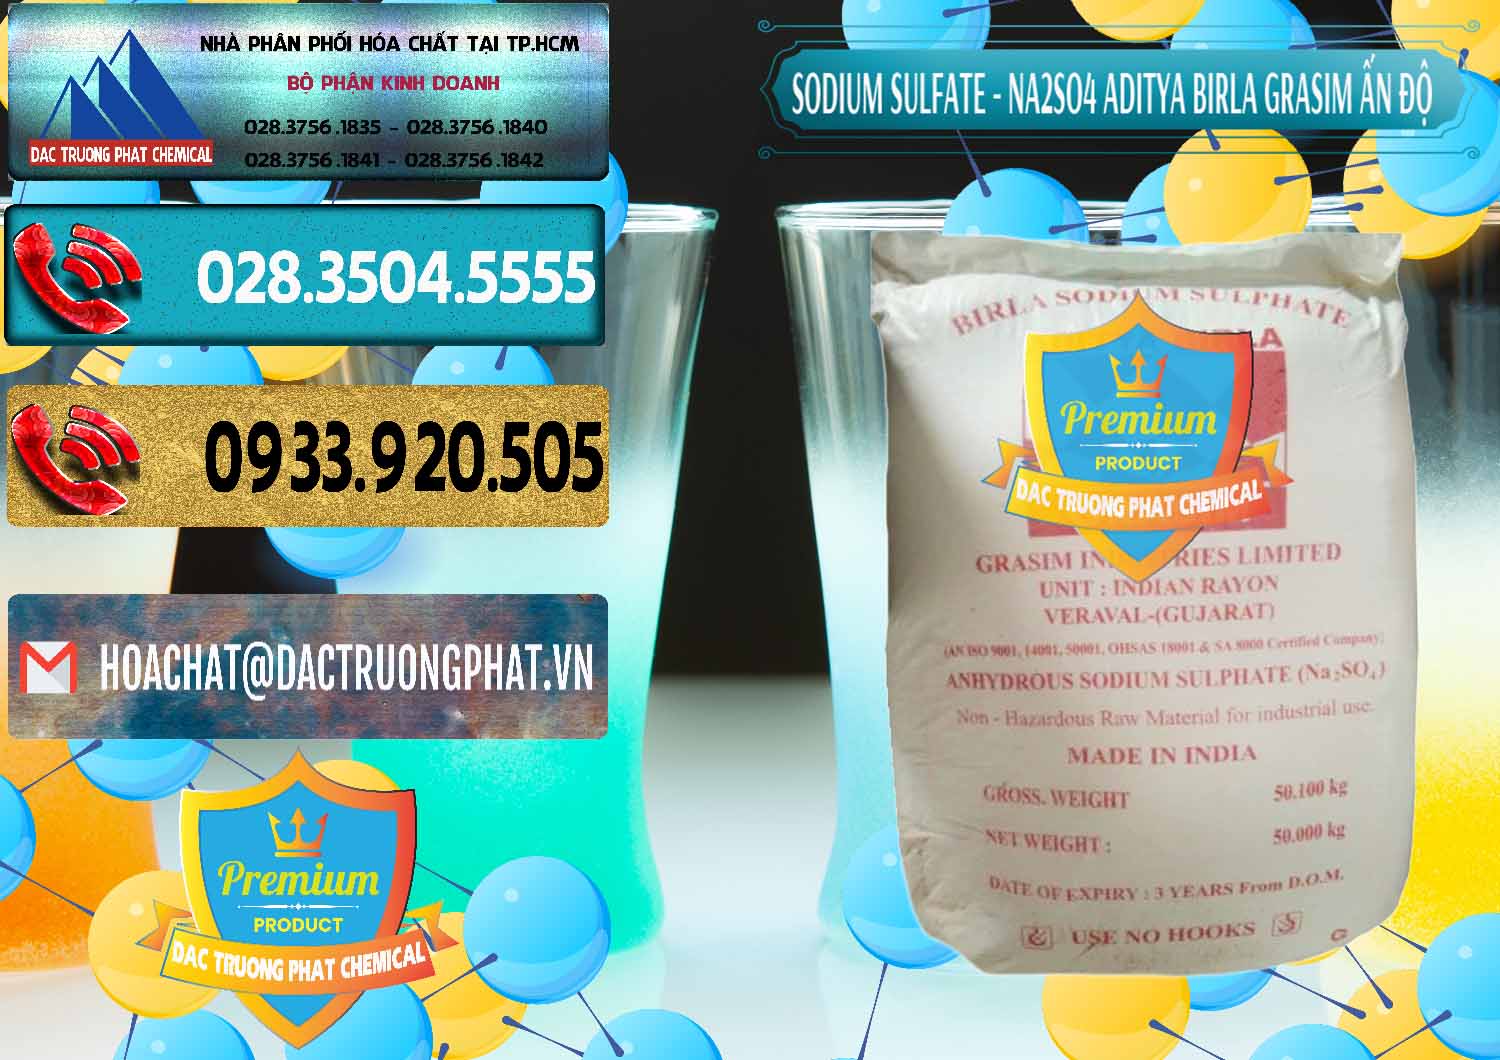 Nơi chuyên phân phối & bán Sodium Sulphate - Muối Sunfat Na2SO4 Grasim Ấn Độ India - 0356 - Chuyên phân phối & bán hóa chất tại TP.HCM - hoachatdetnhuom.com